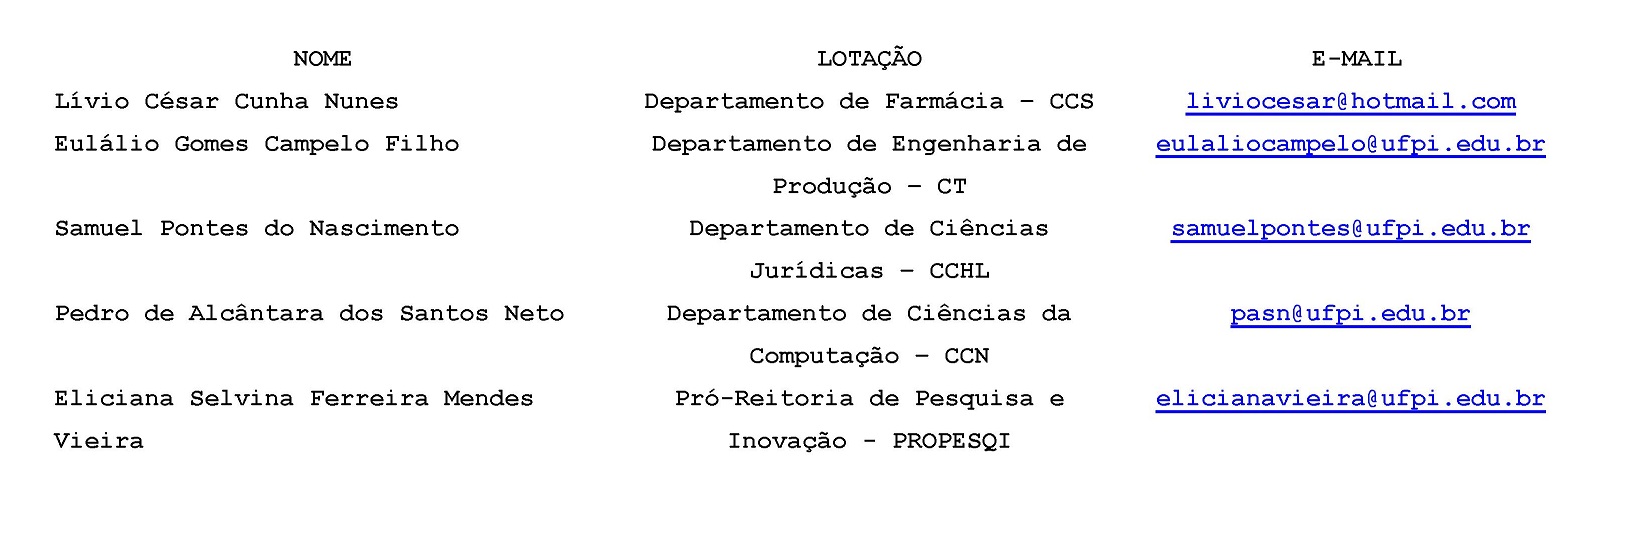 COMISSÃO DE ANÁLISE MARCO LEGAL20180510163312